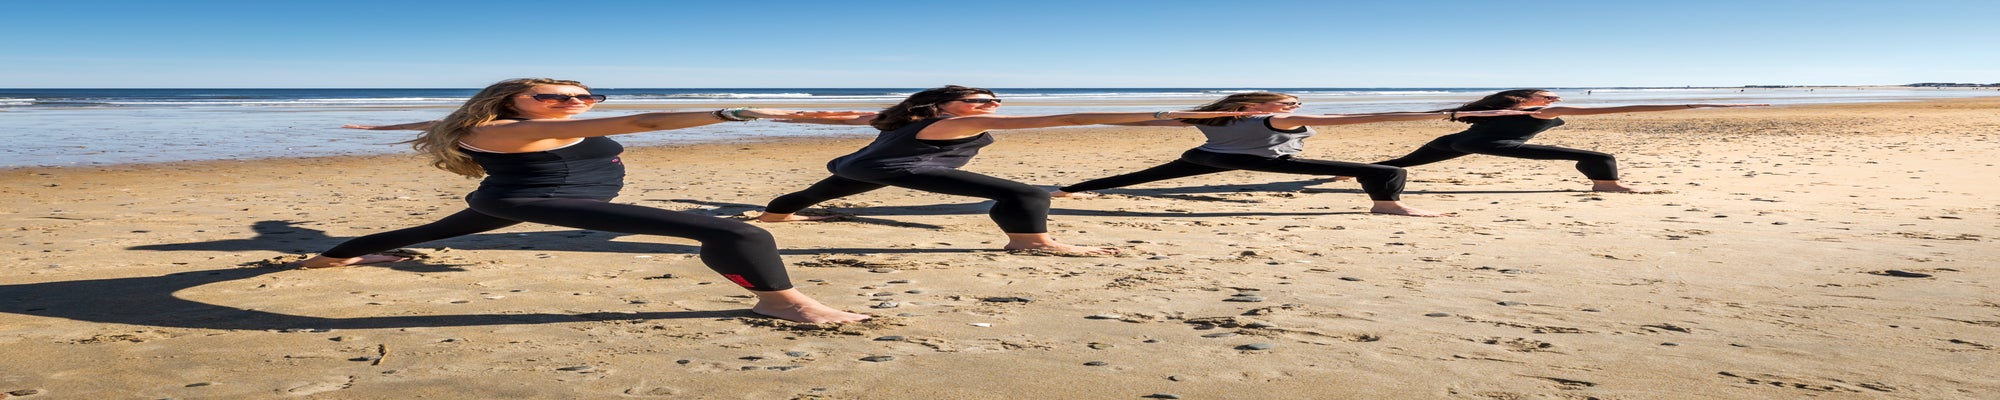 Yoga Classes on the Beach, Yoga At The Beach